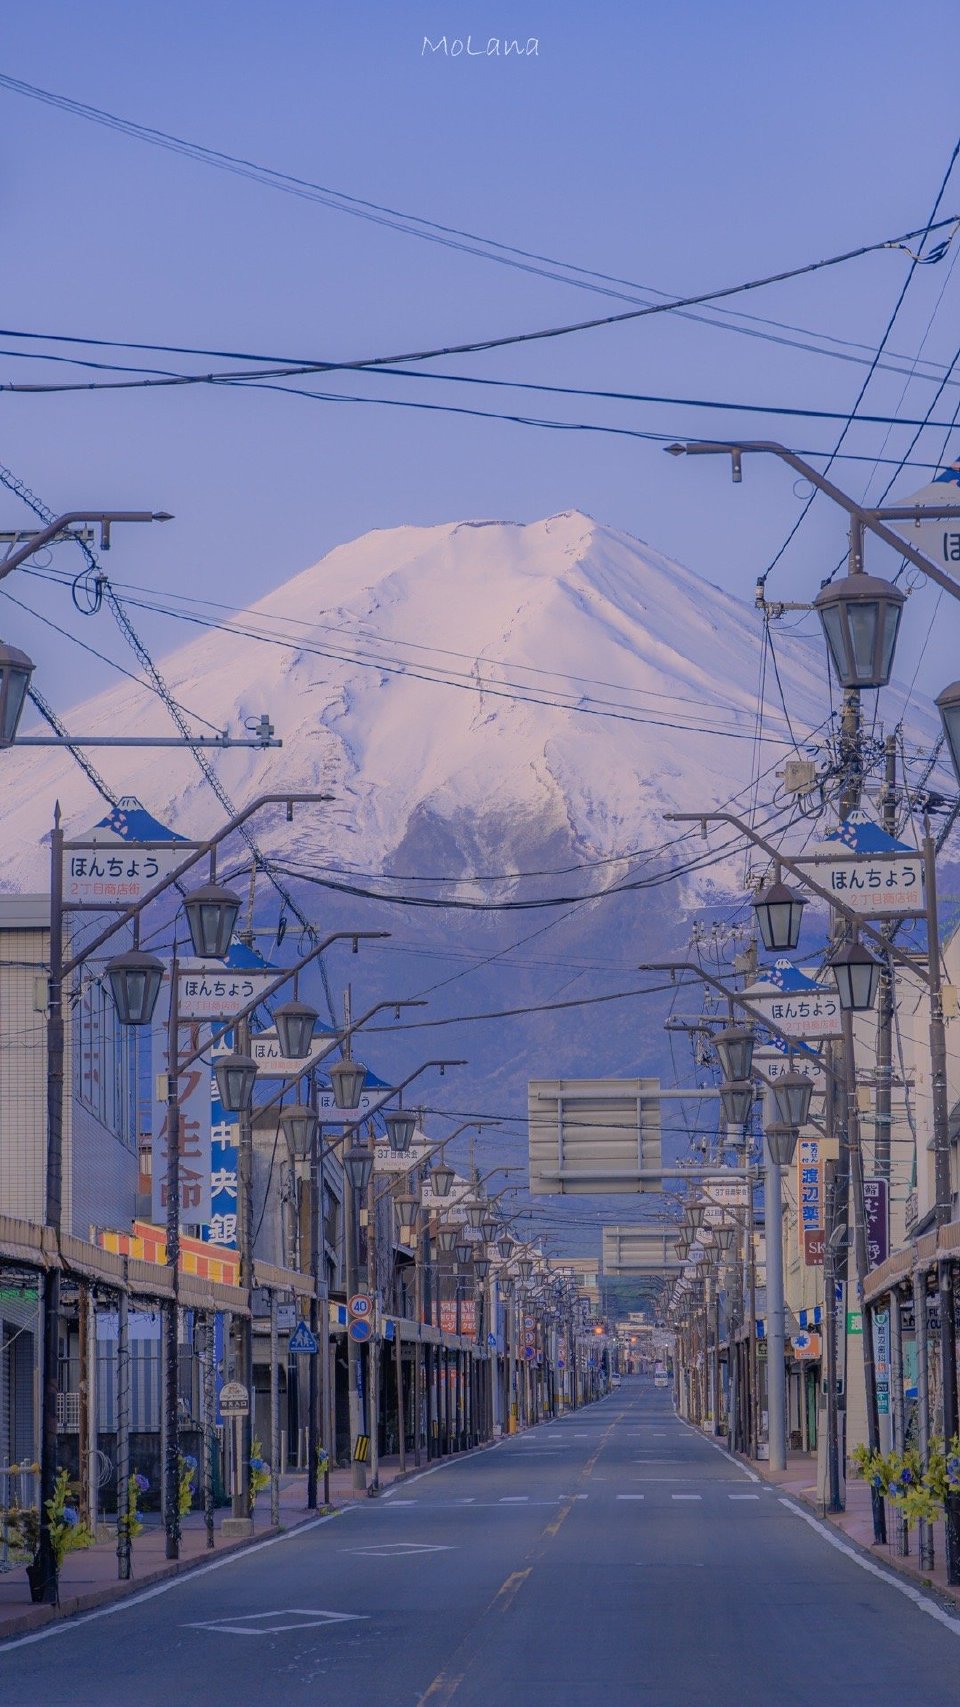 富士山下摄影:@molana 67 - 堆糖,美图壁纸兴趣社区